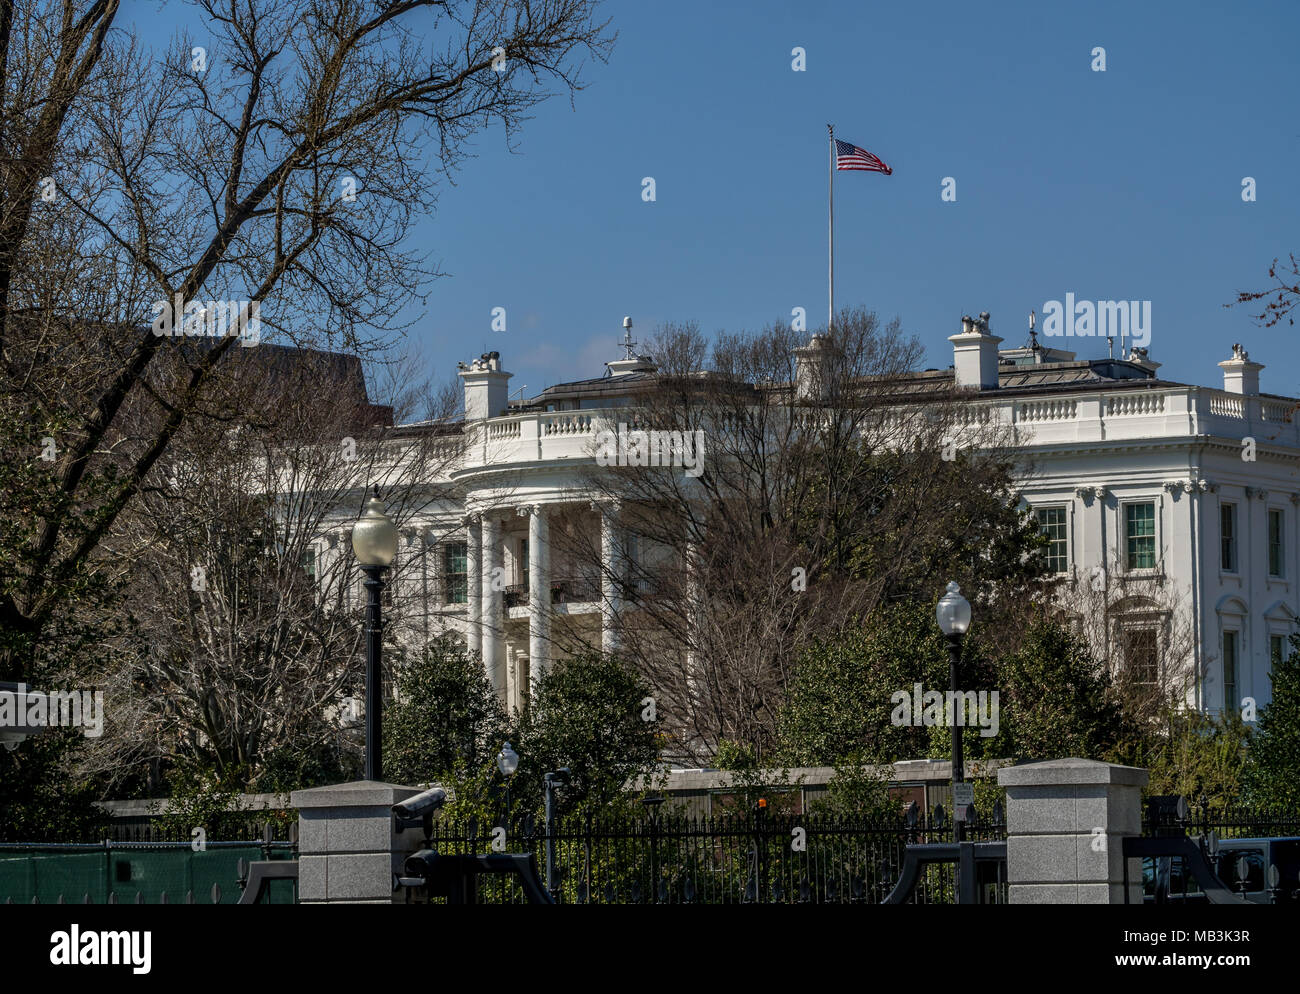 The White House, Washington D.C. Stock Photo